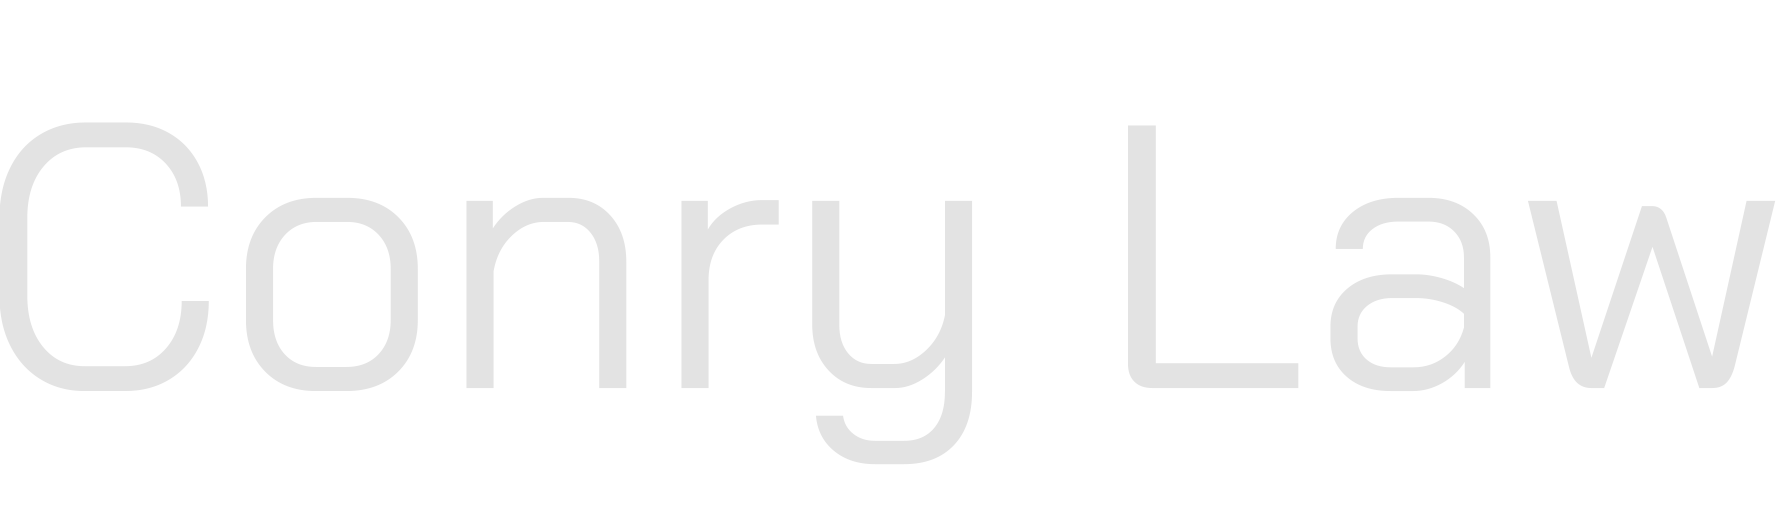 conry law logo